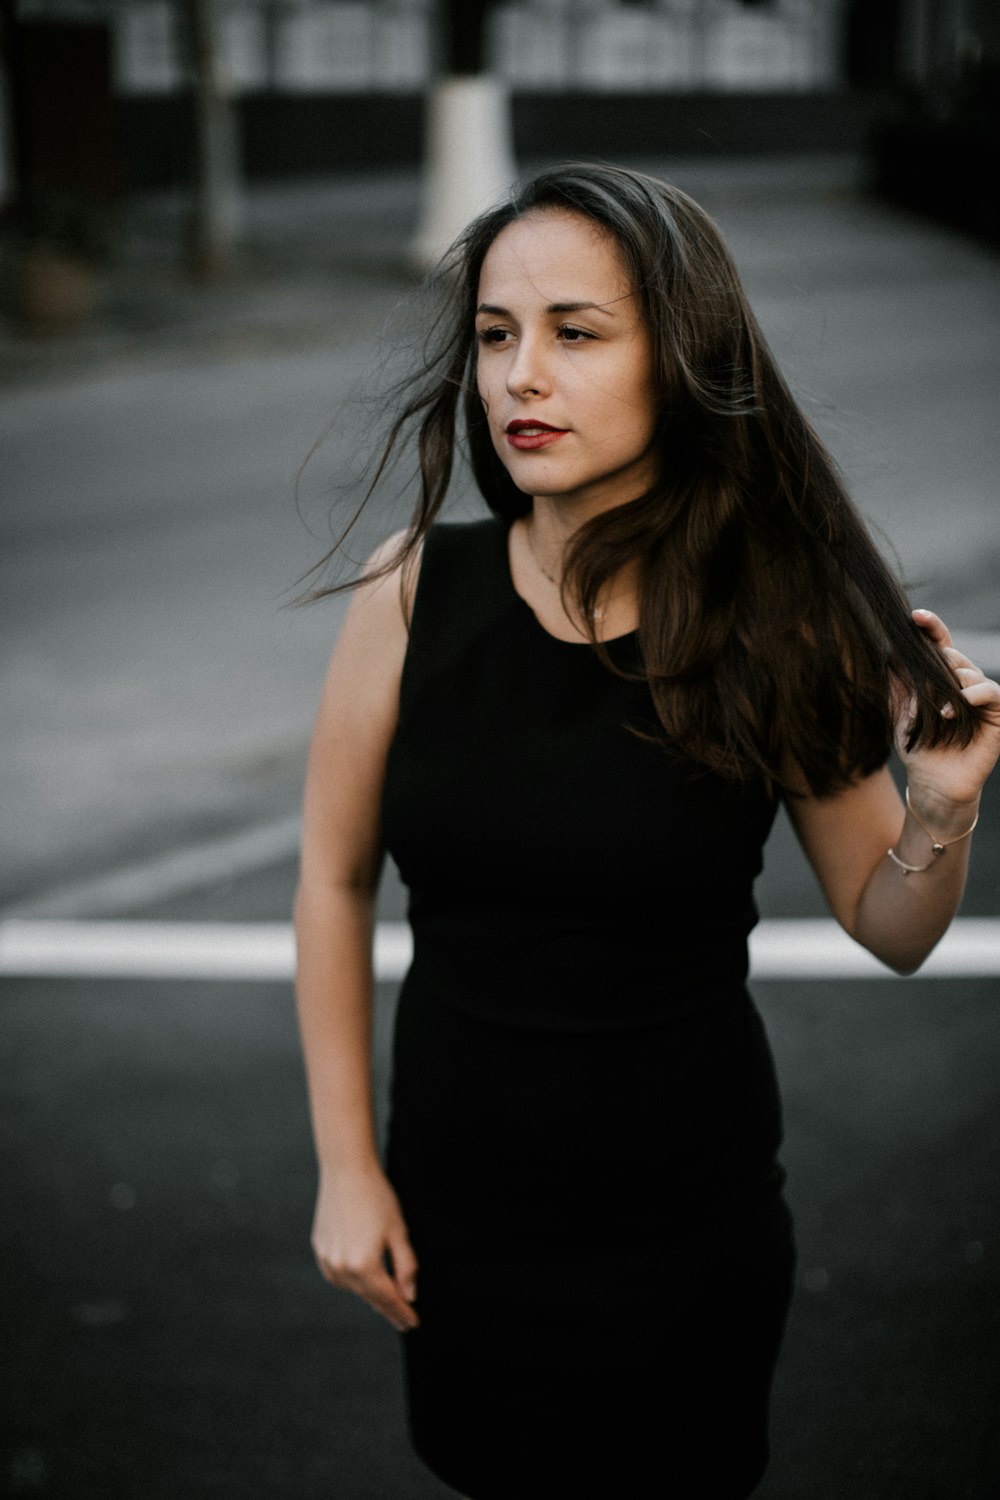 검은 민소매 드레스를 입은 여자가 길을 걷는 포커스 사진